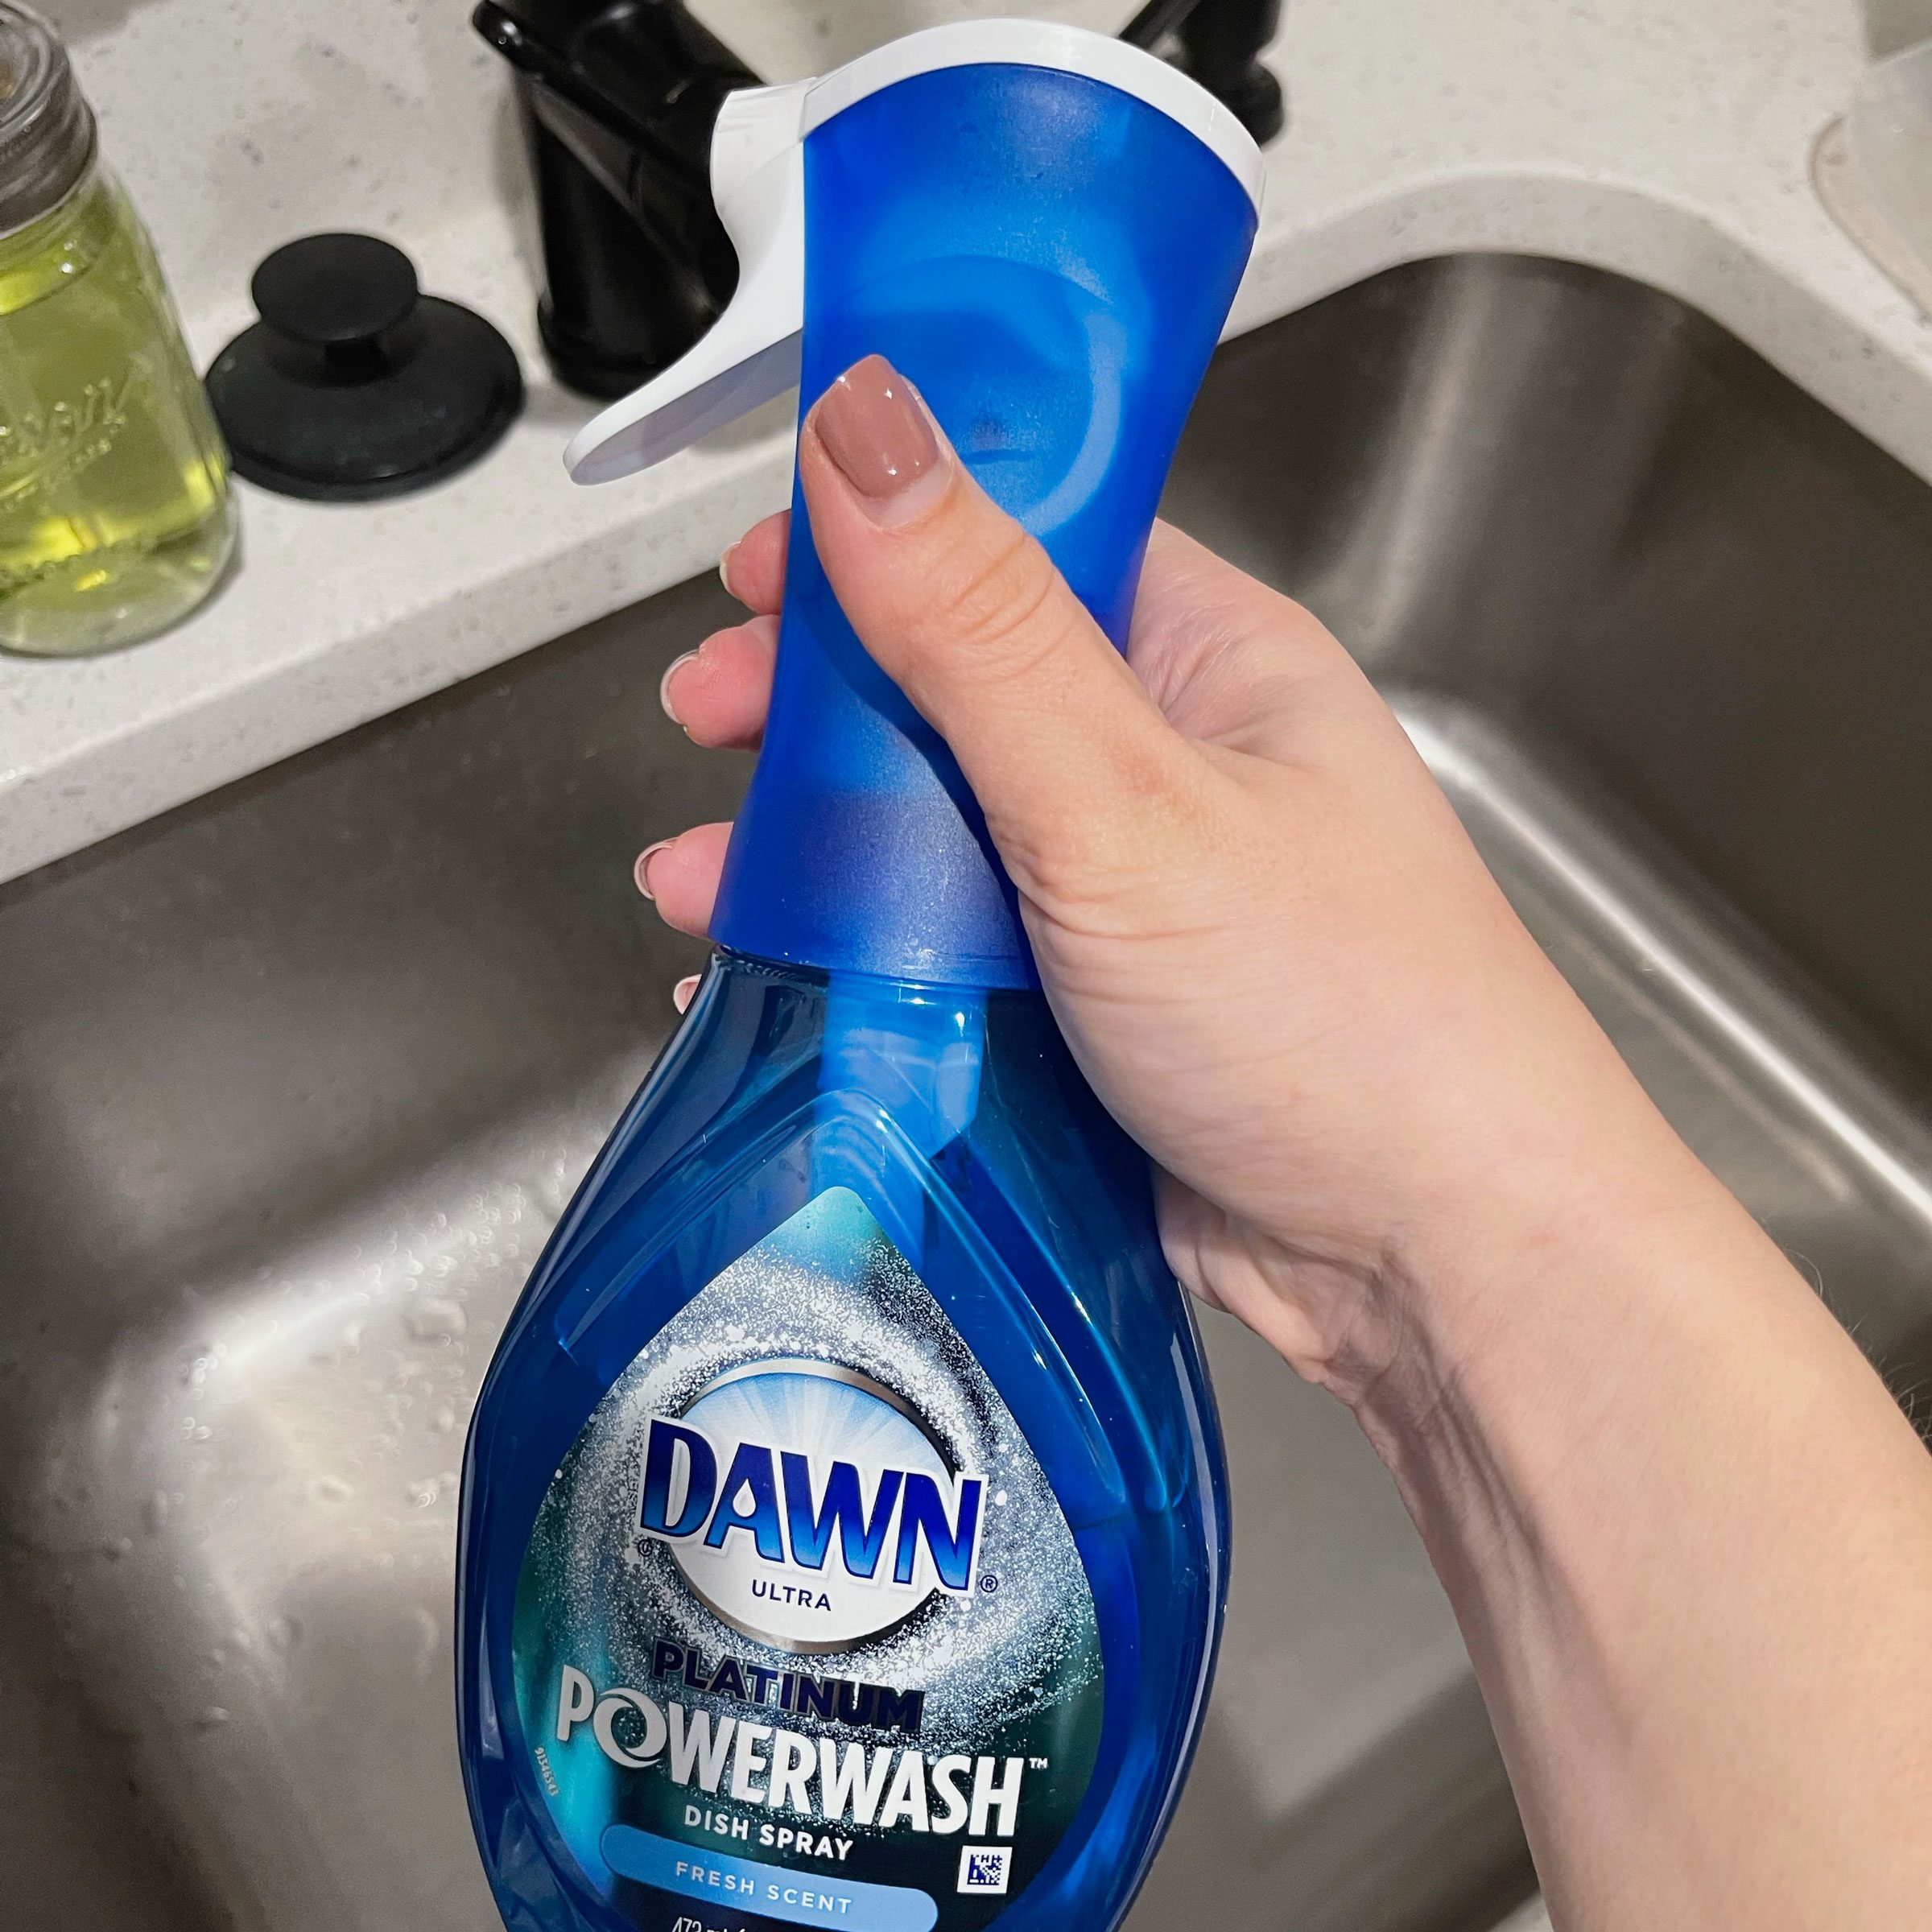 Dawn Platinum Powerwash Dish Spray Refill, Citrus Scent